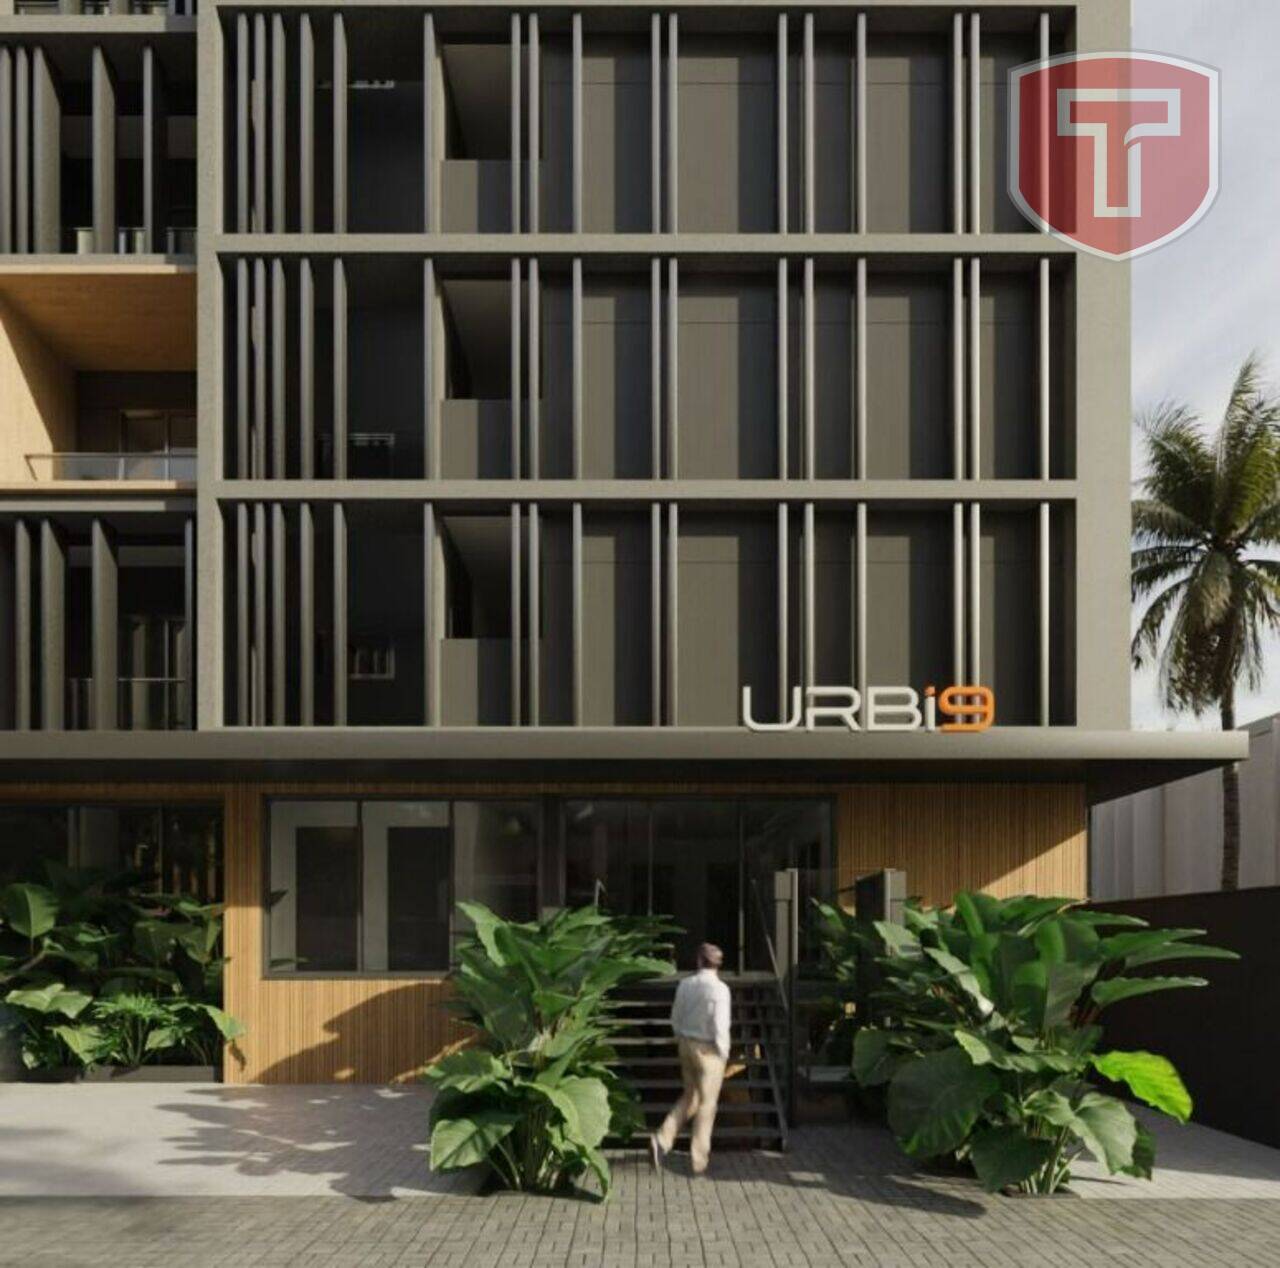 UrbI9 - Apartamento flat com 1 dormitório à venda - Jardim Oceania, João Pessoa/PB